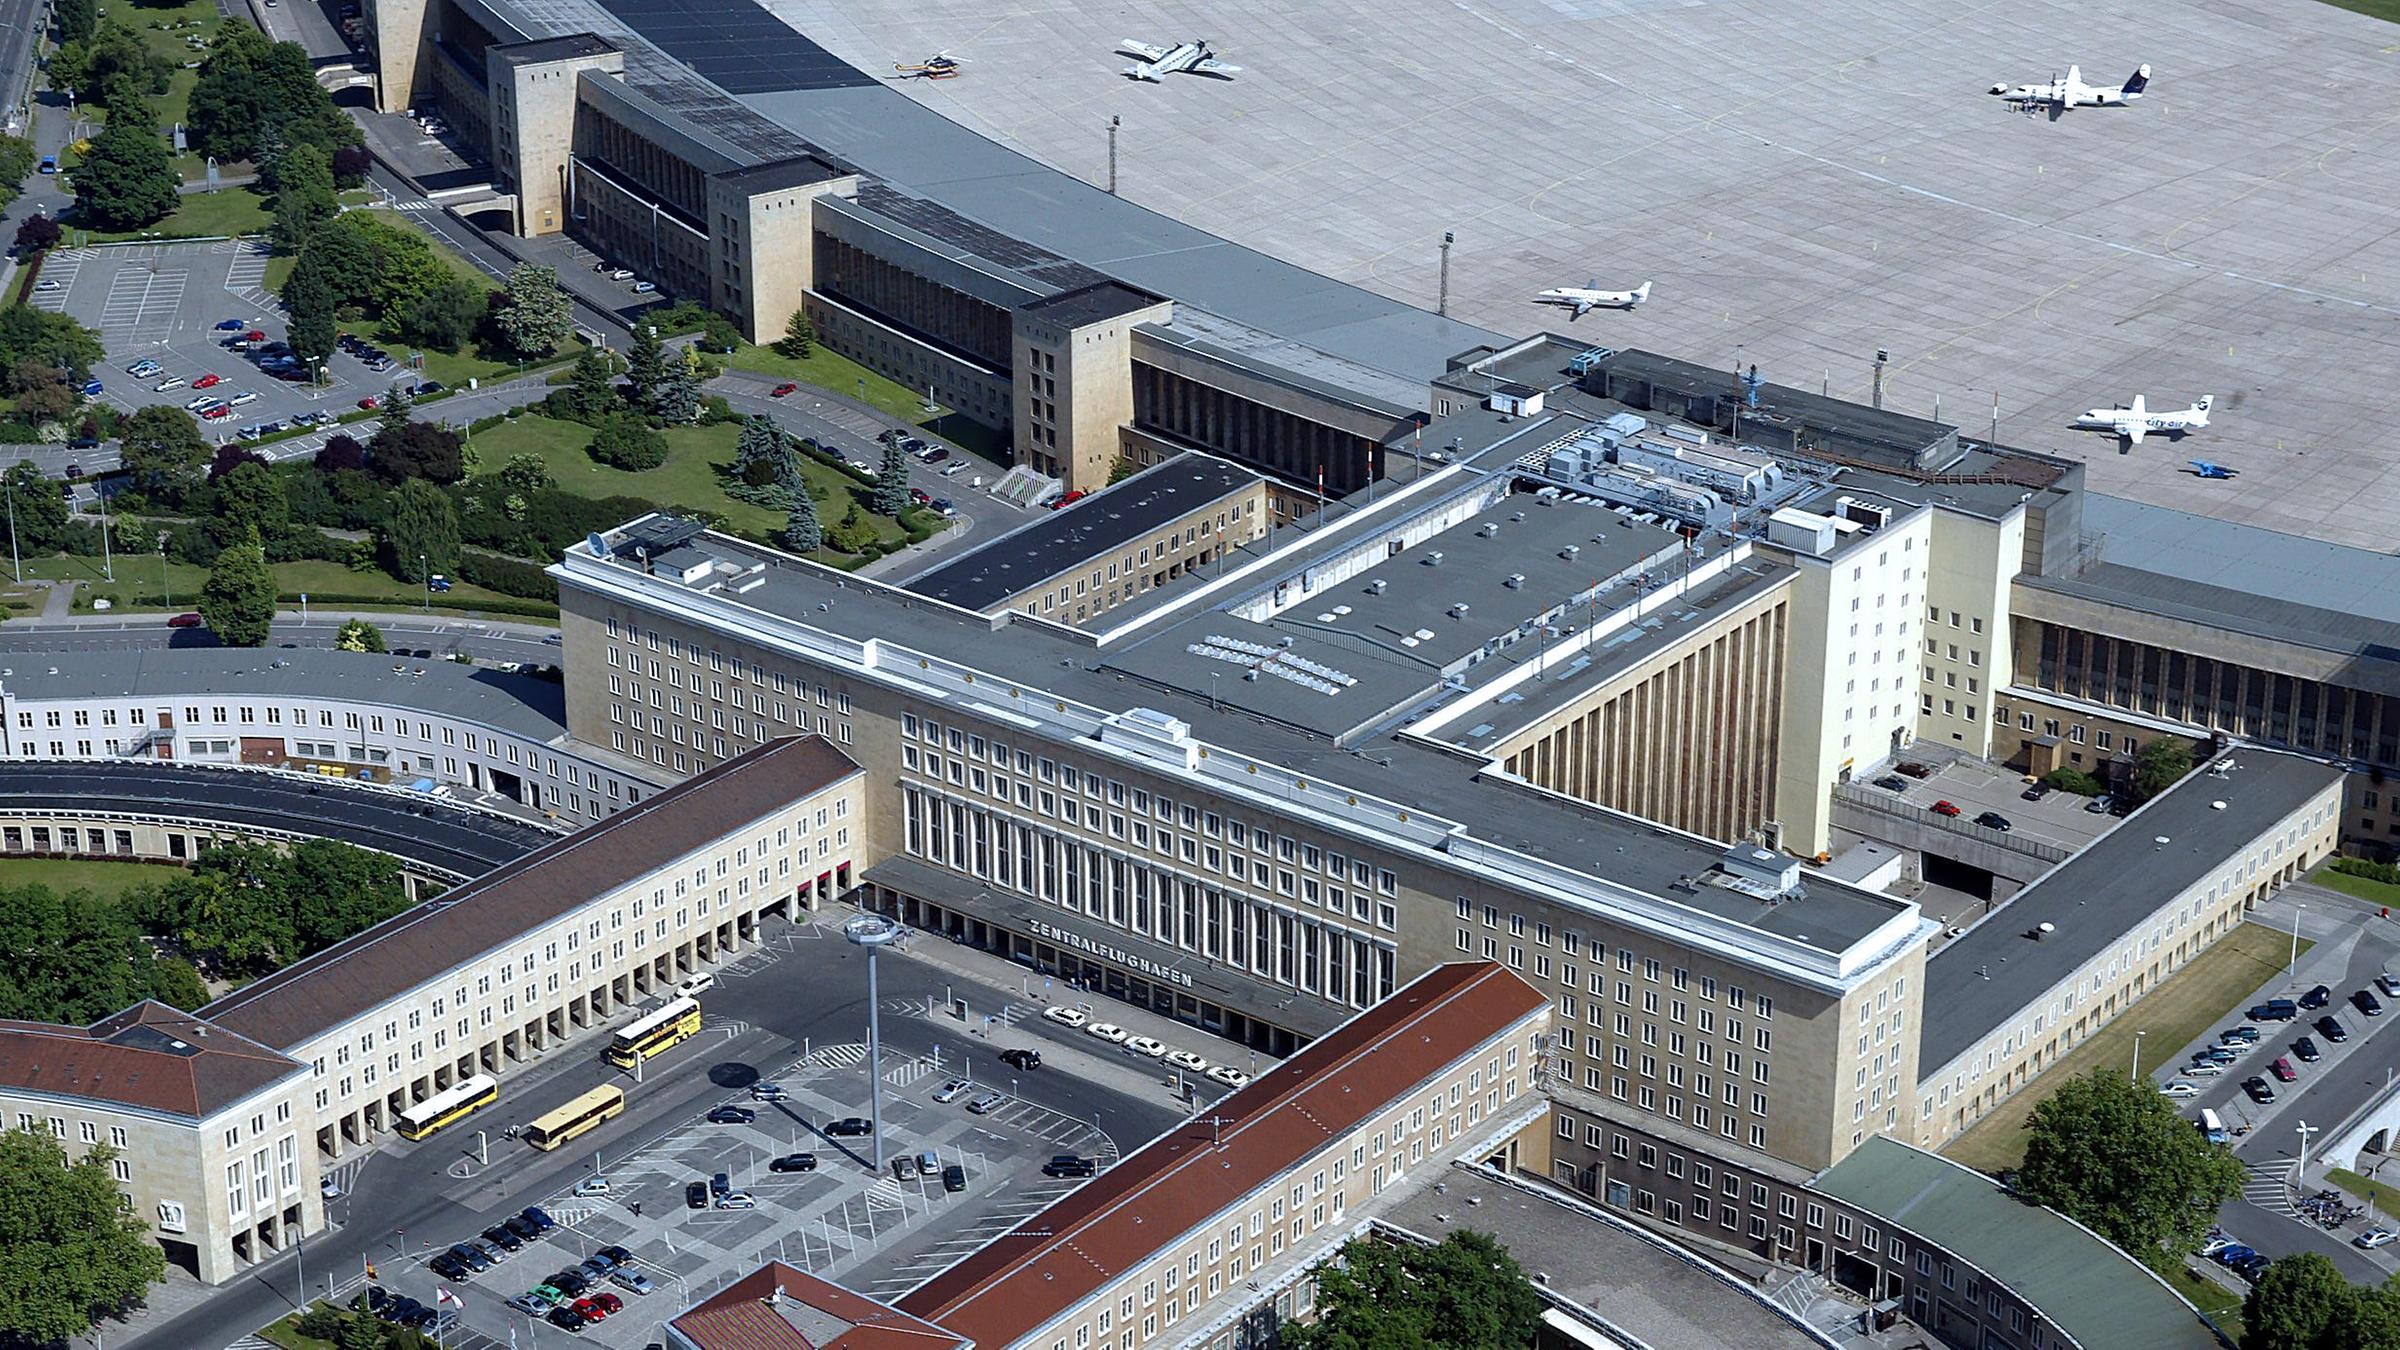 Archiv: Die Luftaufnahme zeigt das Abfertigungsgebäude und einen Teil des Rollfeldes des Flughafens Berlin-Tempelhof, aufgenommen am 02.06.2003